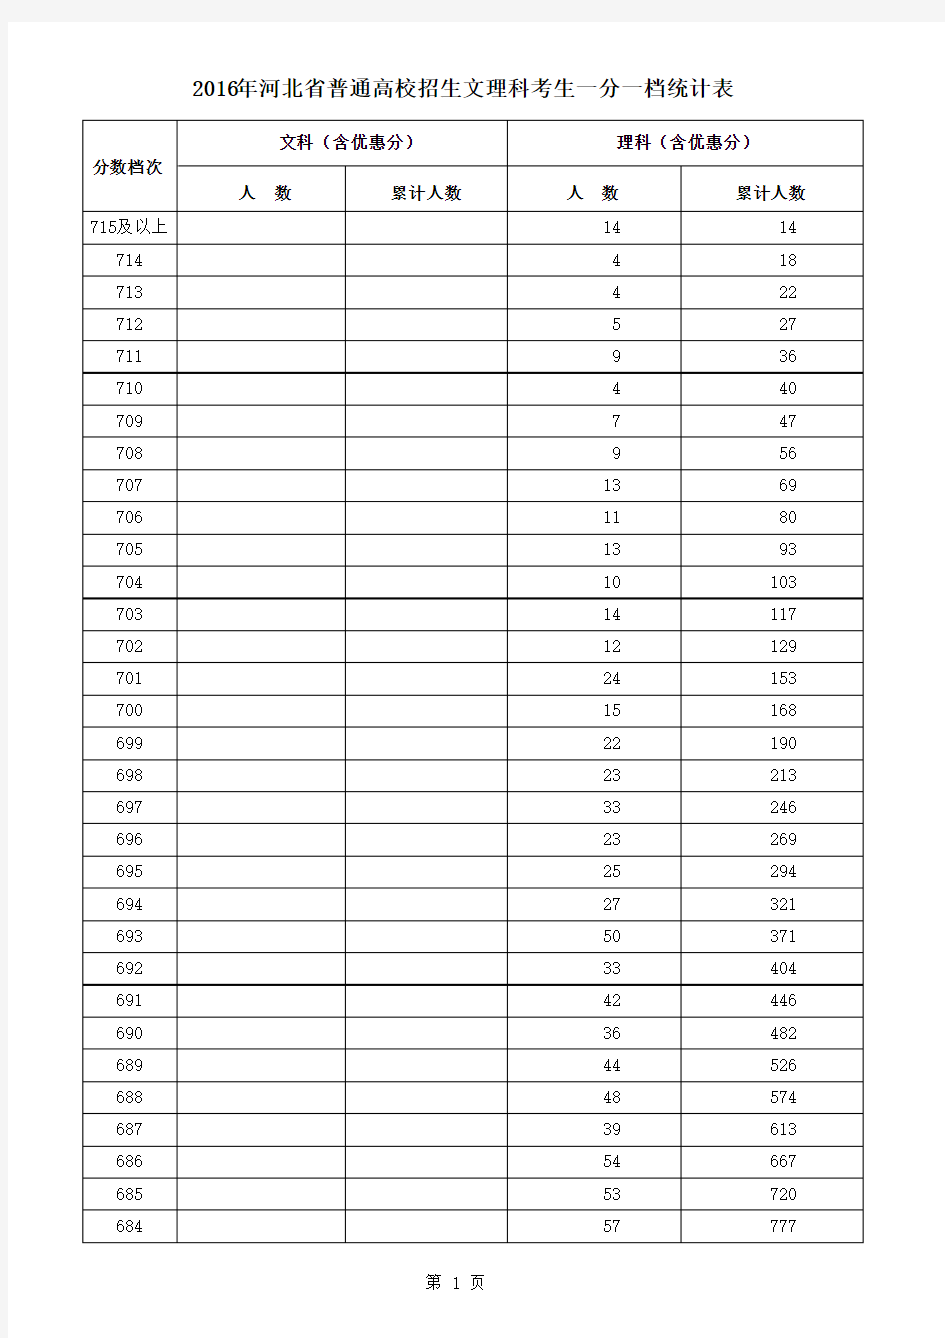 2016年度河北地区高等考试一分一档统计表